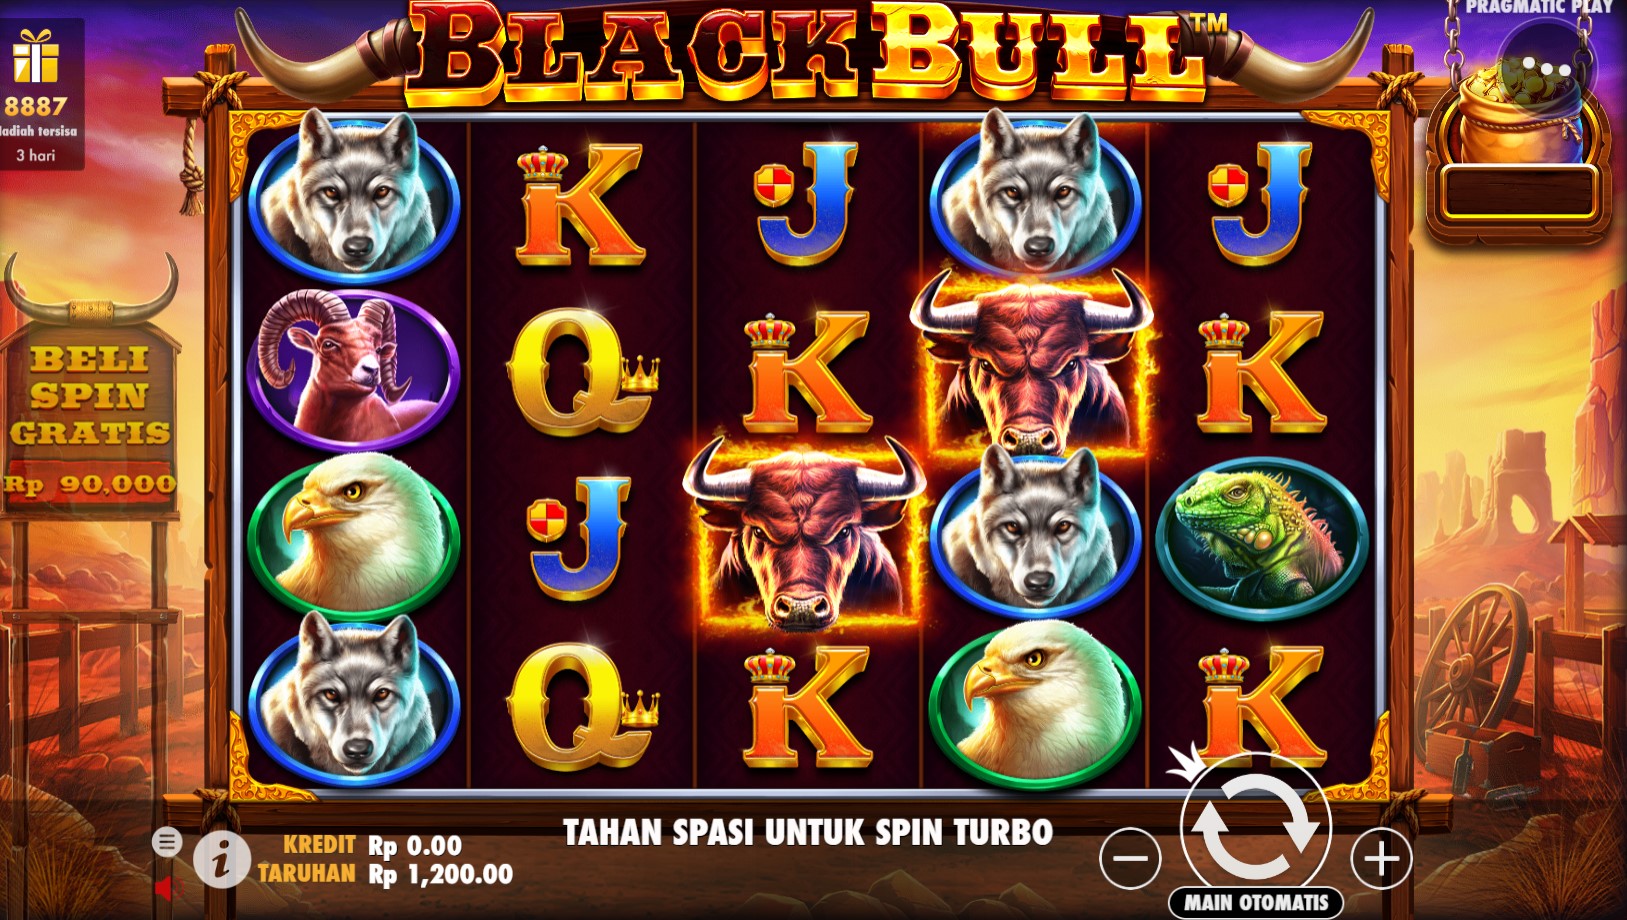 “Black Bull” Petualangan Penuh Keberanian dan Keberuntungan di Arena Matador  Pendahuluan